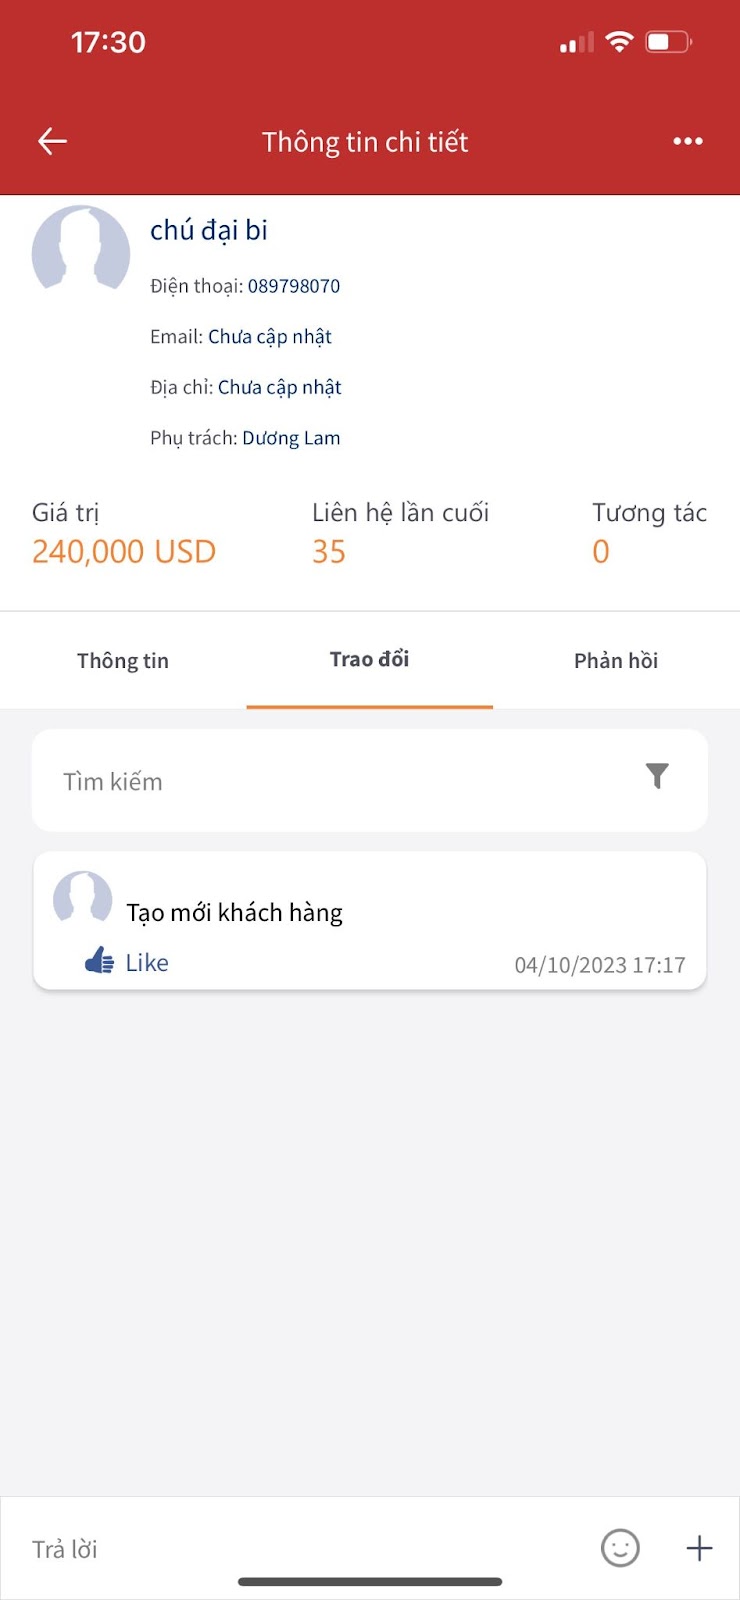 Bổ sung hiển thị đơn vị tiền tệ trên app ở thông tin giá trị